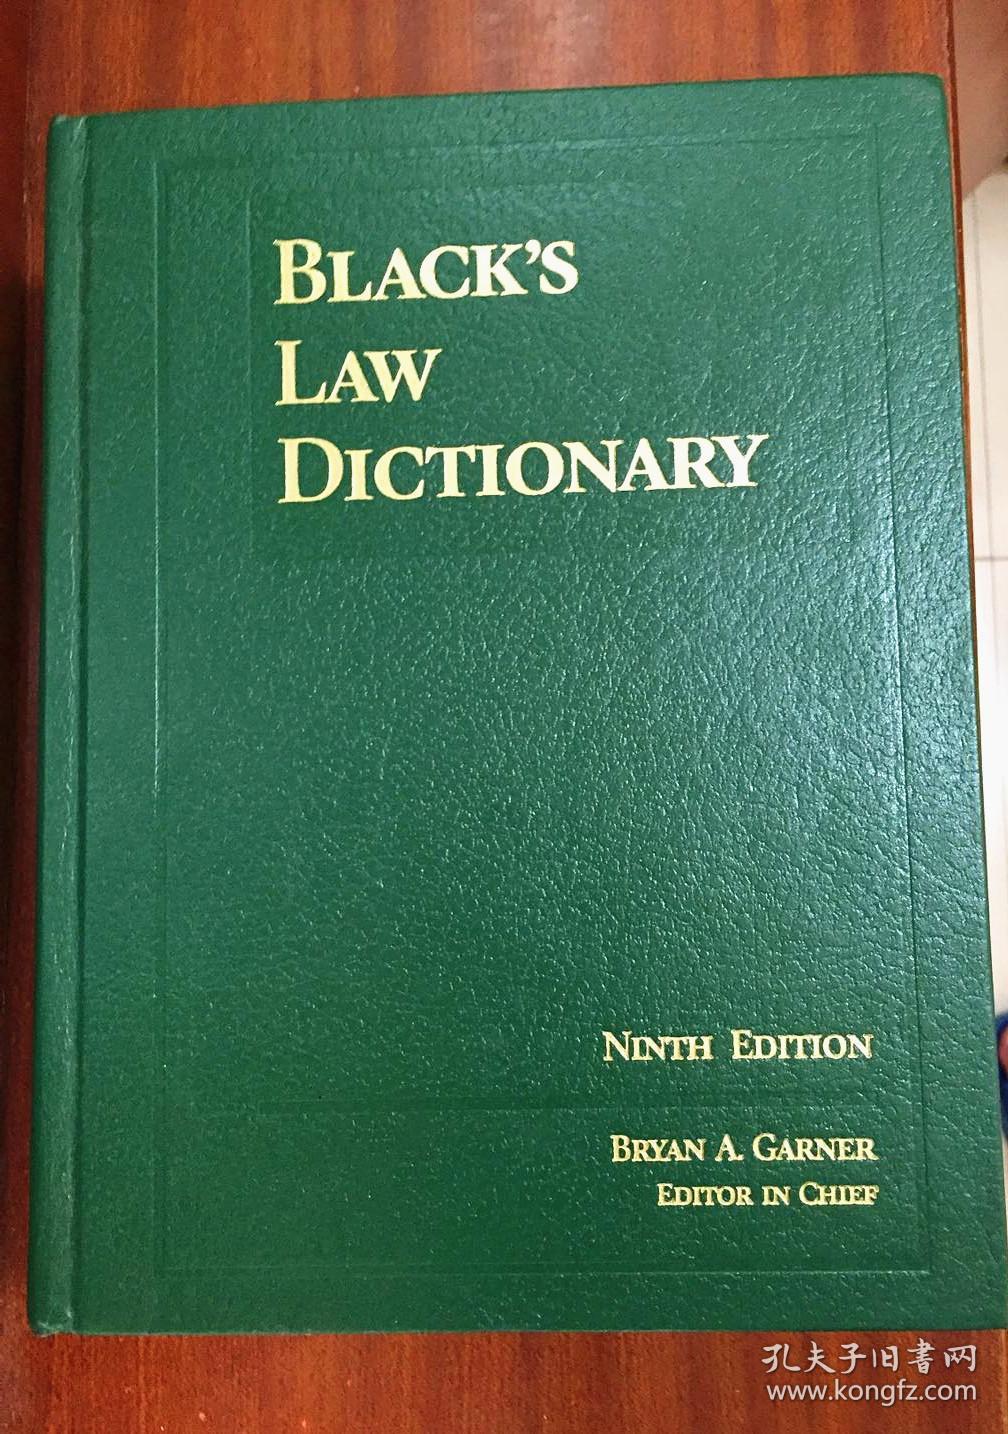 外文书店库存全新无瑕疵 美国进口原装辞典 Black`s Law Dictionary DELUXE NINTH EDITION布莱克法律词典 第9版豪华版